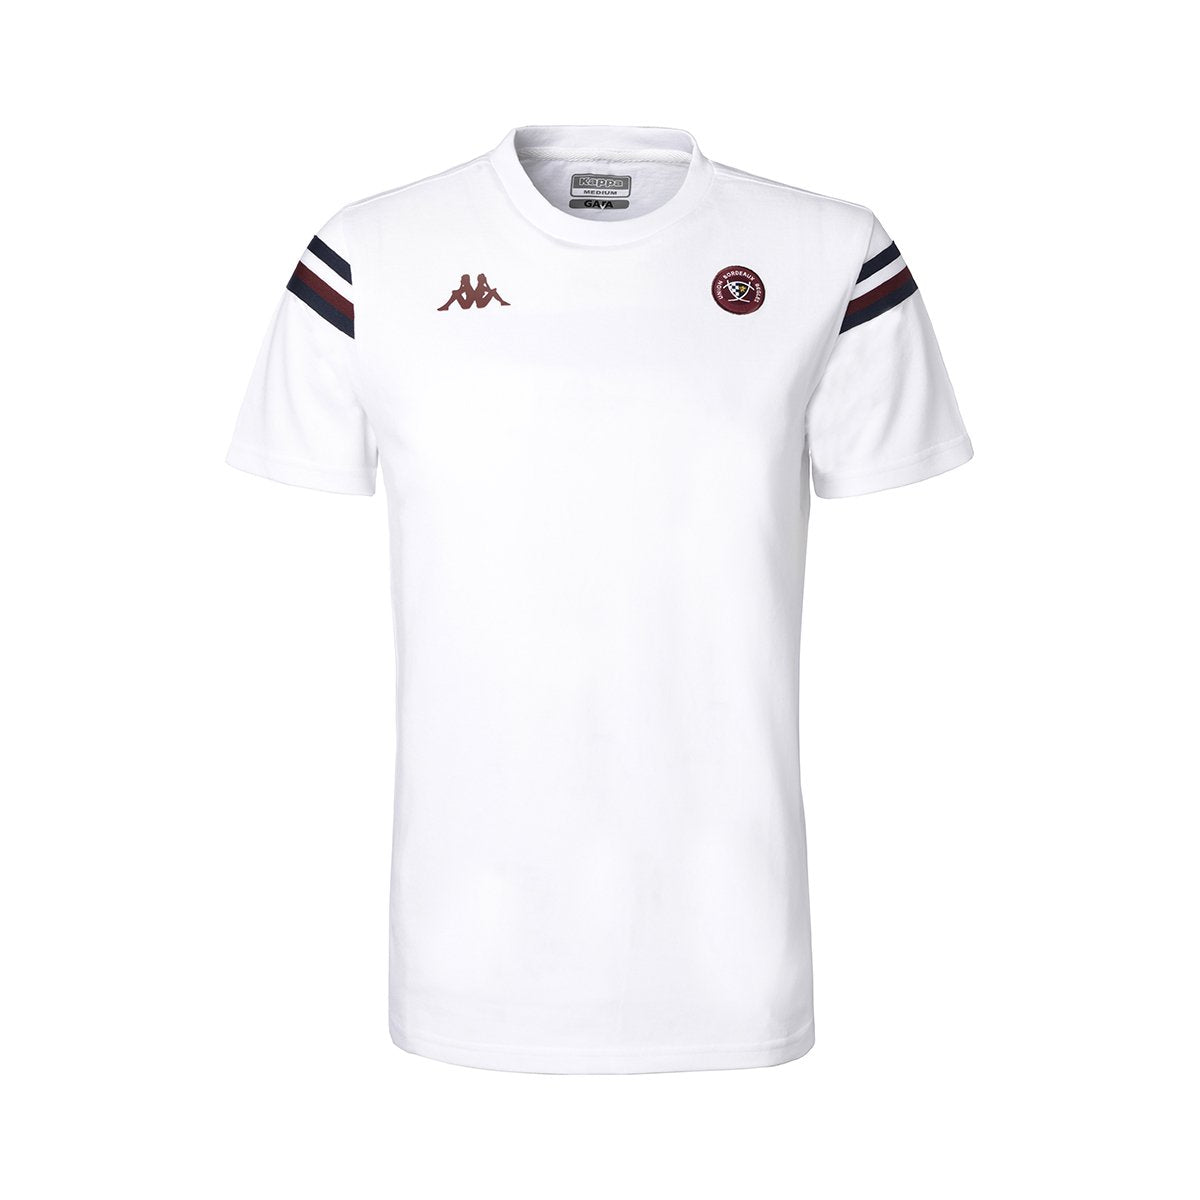 Camiseta  Fiori UBB Rugby niño Blanco - Imagen 1